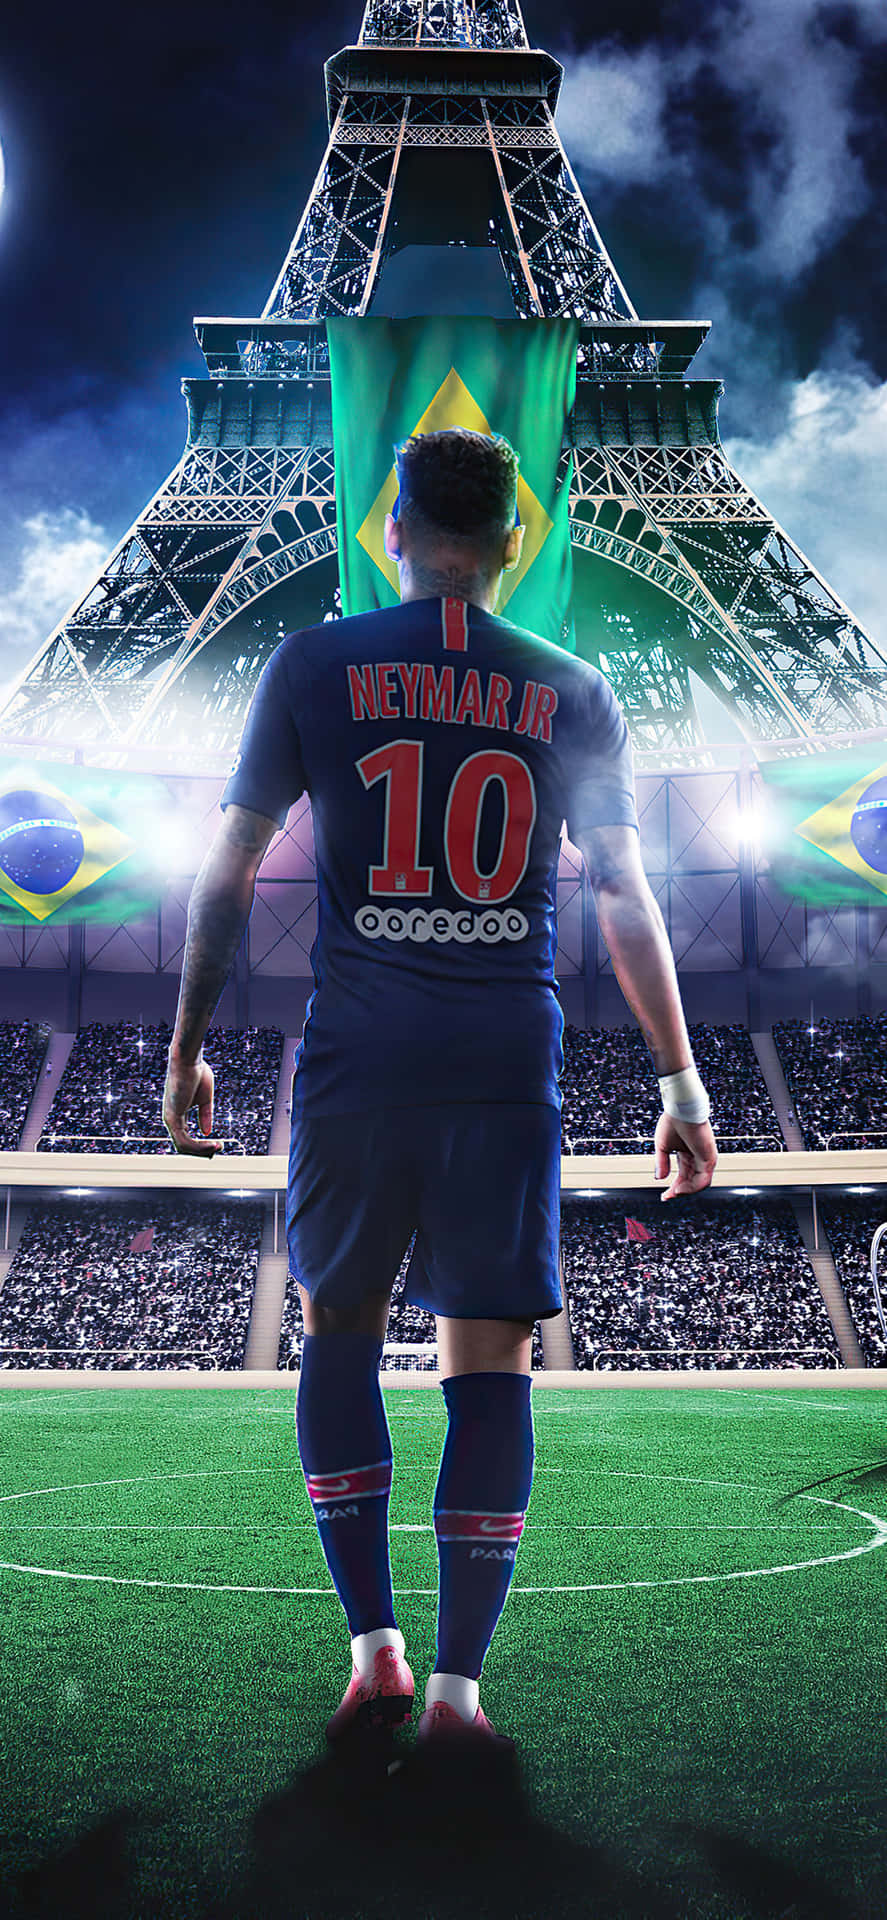 Tải ảnh nền Neymar cho Iphone miễn phí: \